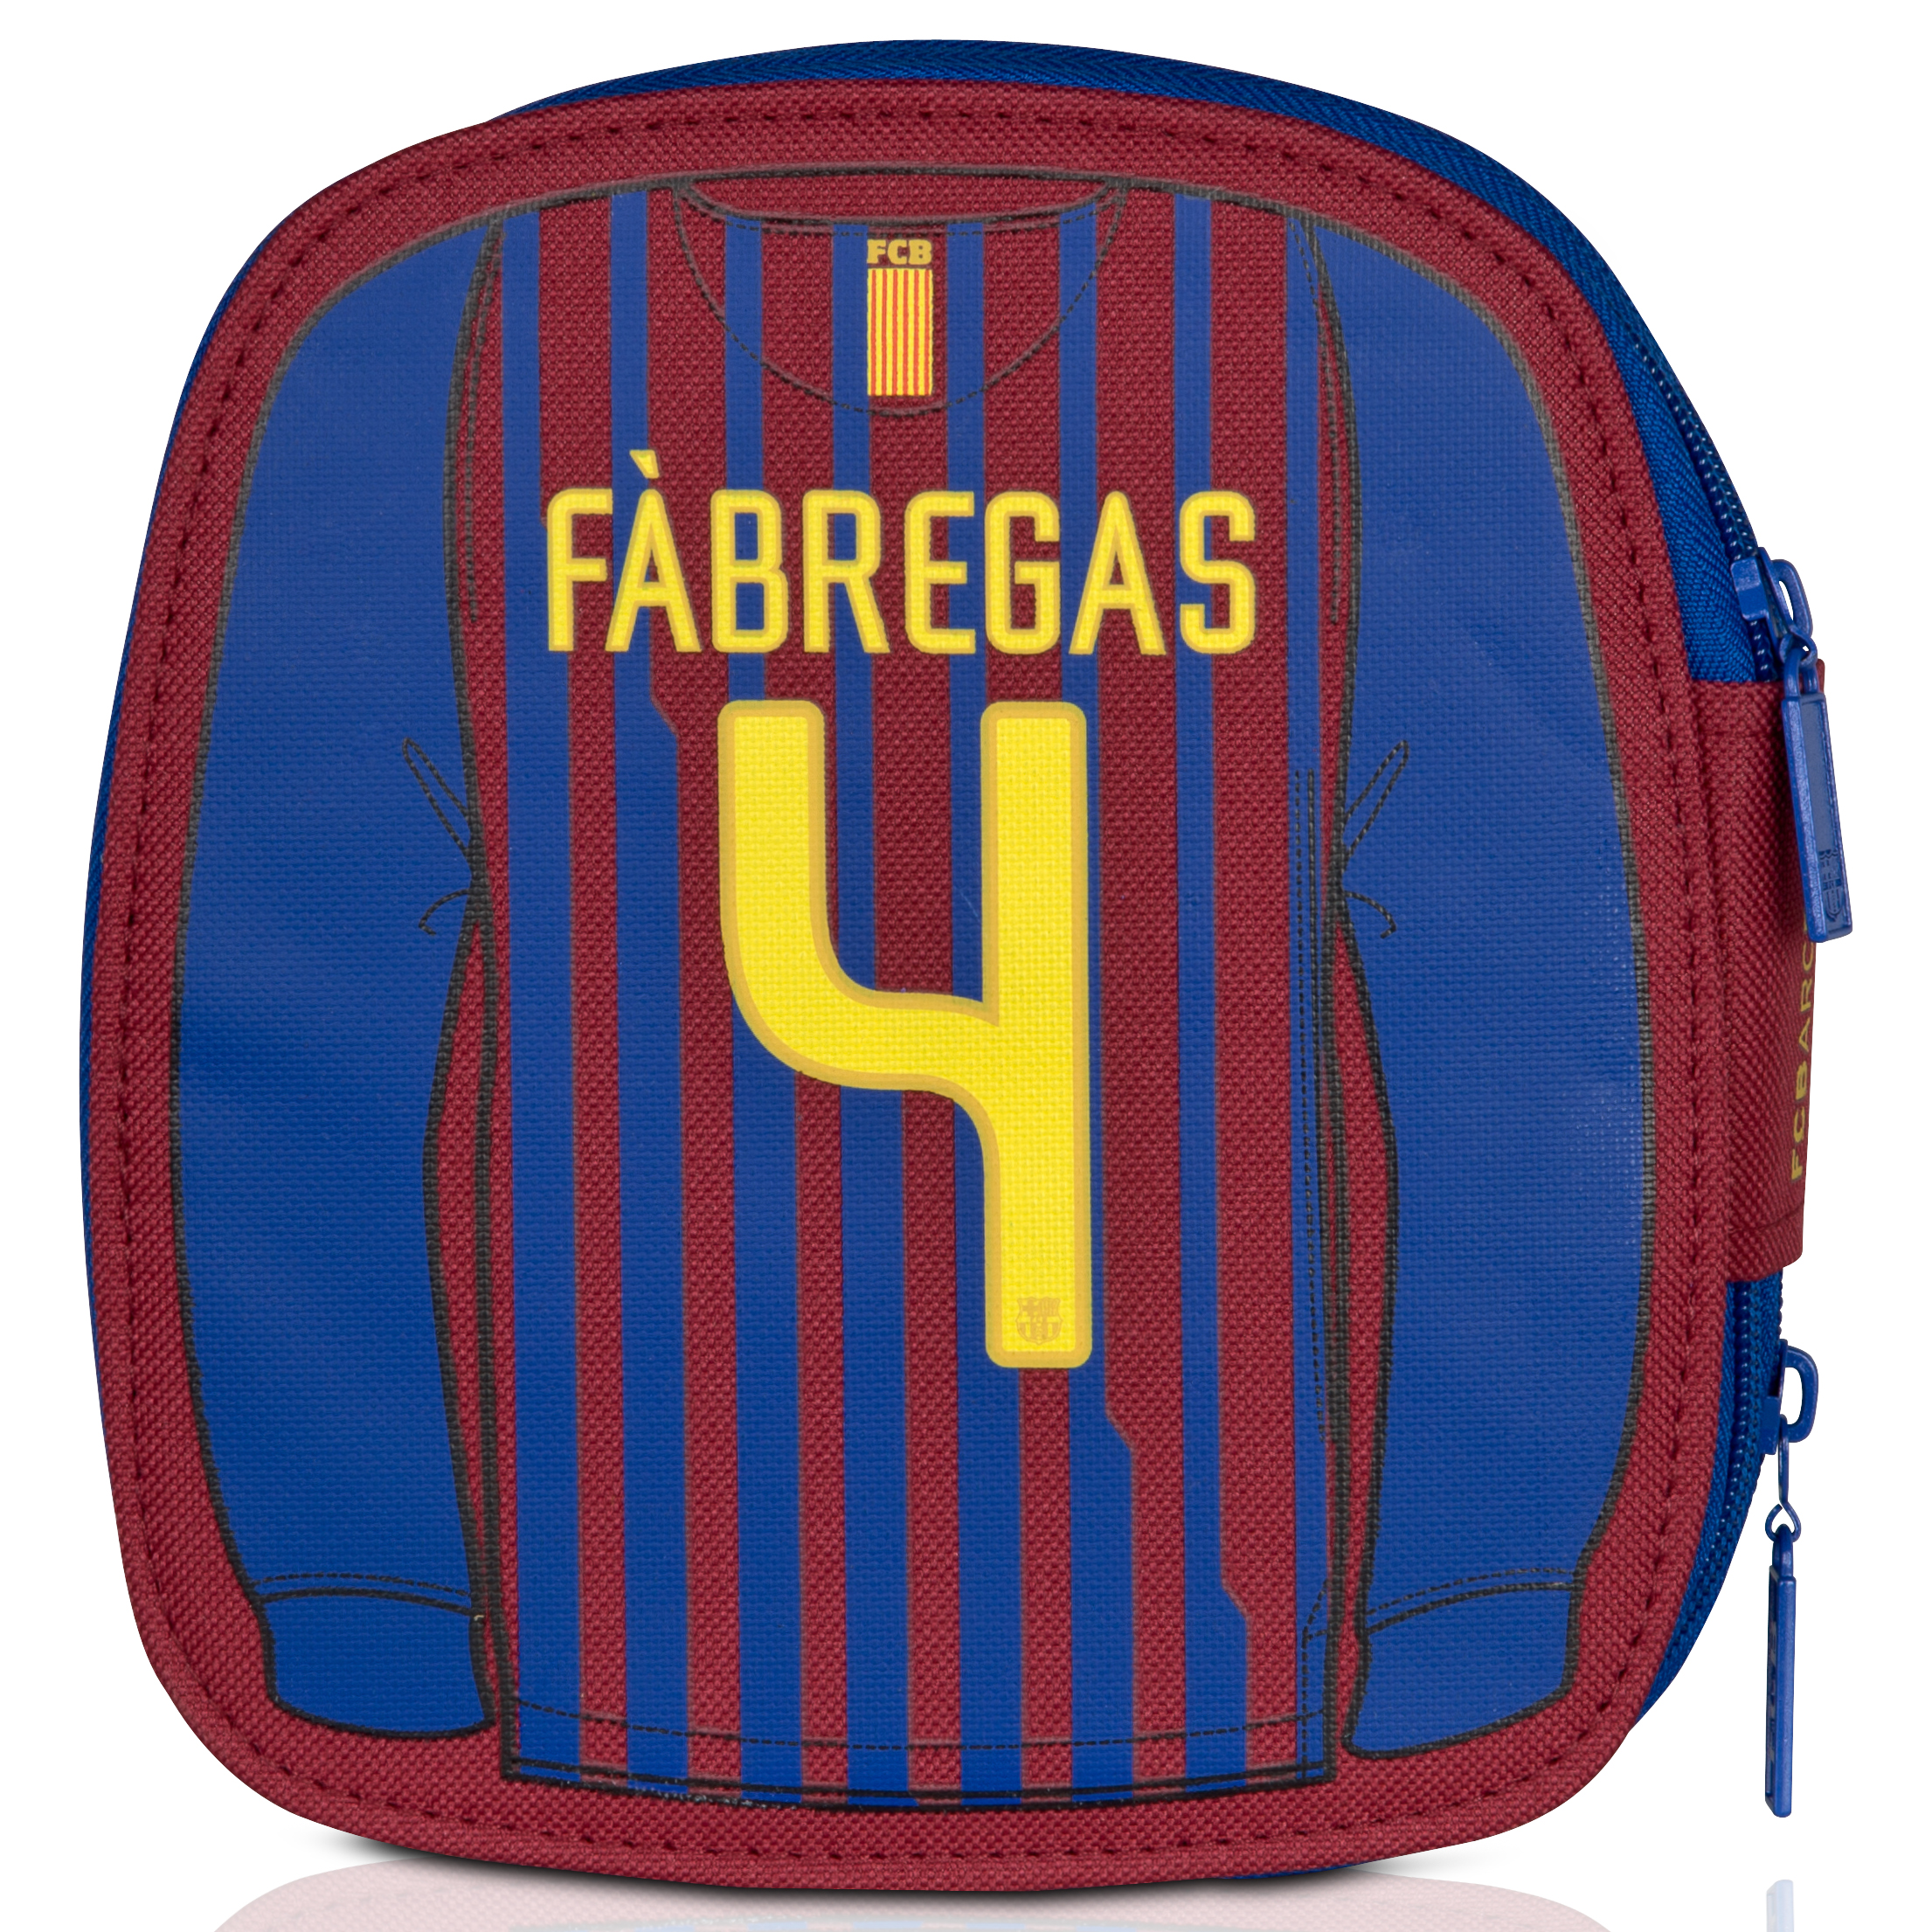 Estoig escolar complert del FC Barcelona - Fàbregas